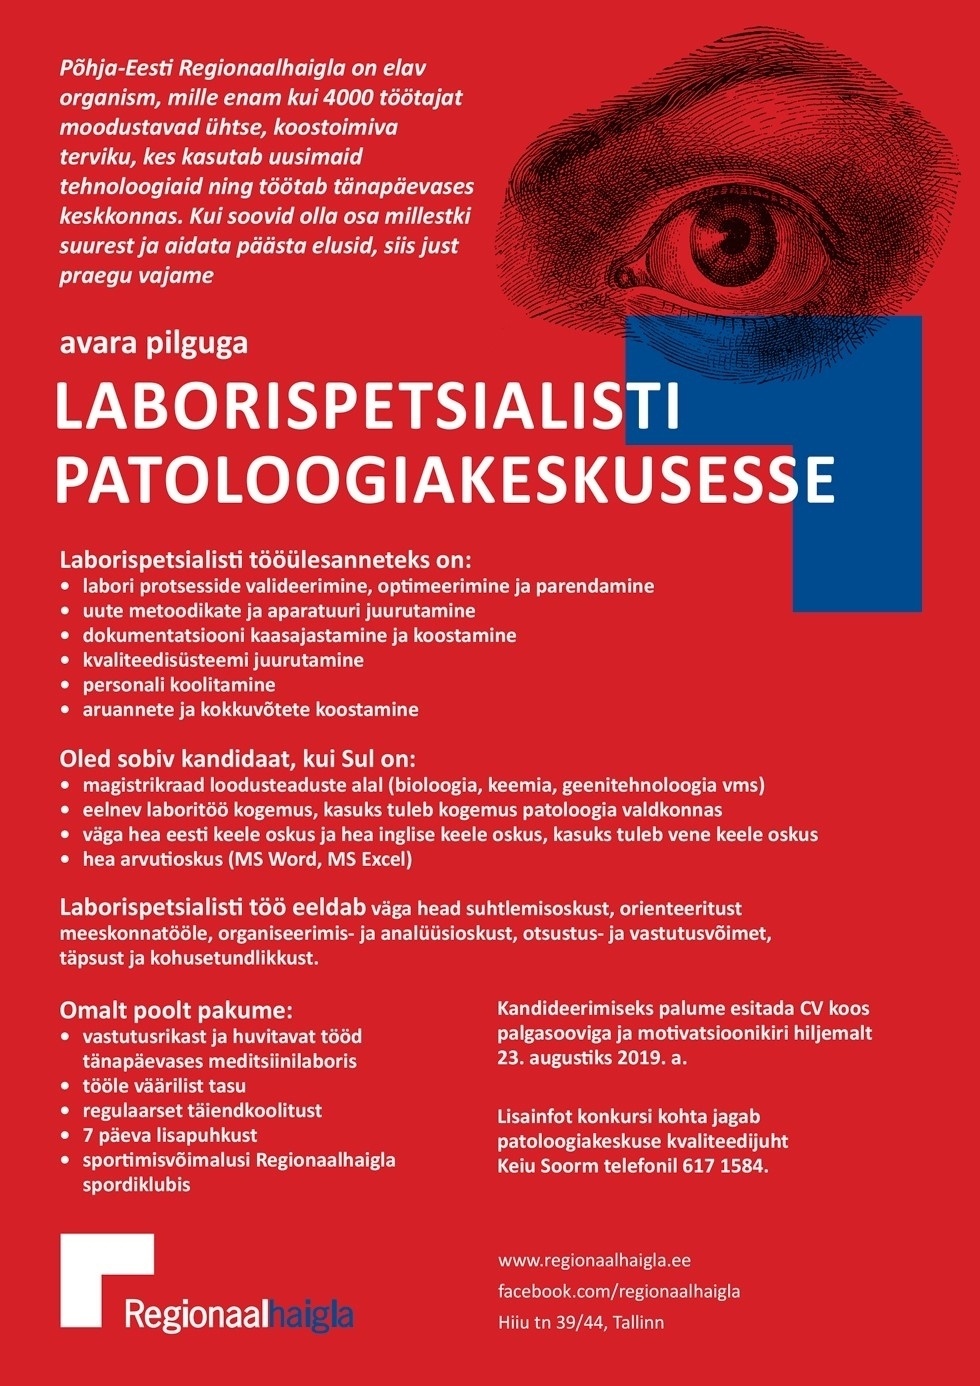 Põhja-Eesti Regionaalhaigla SA Laborispetsialist patoloogiakeskuse immunoloogia üksusesse